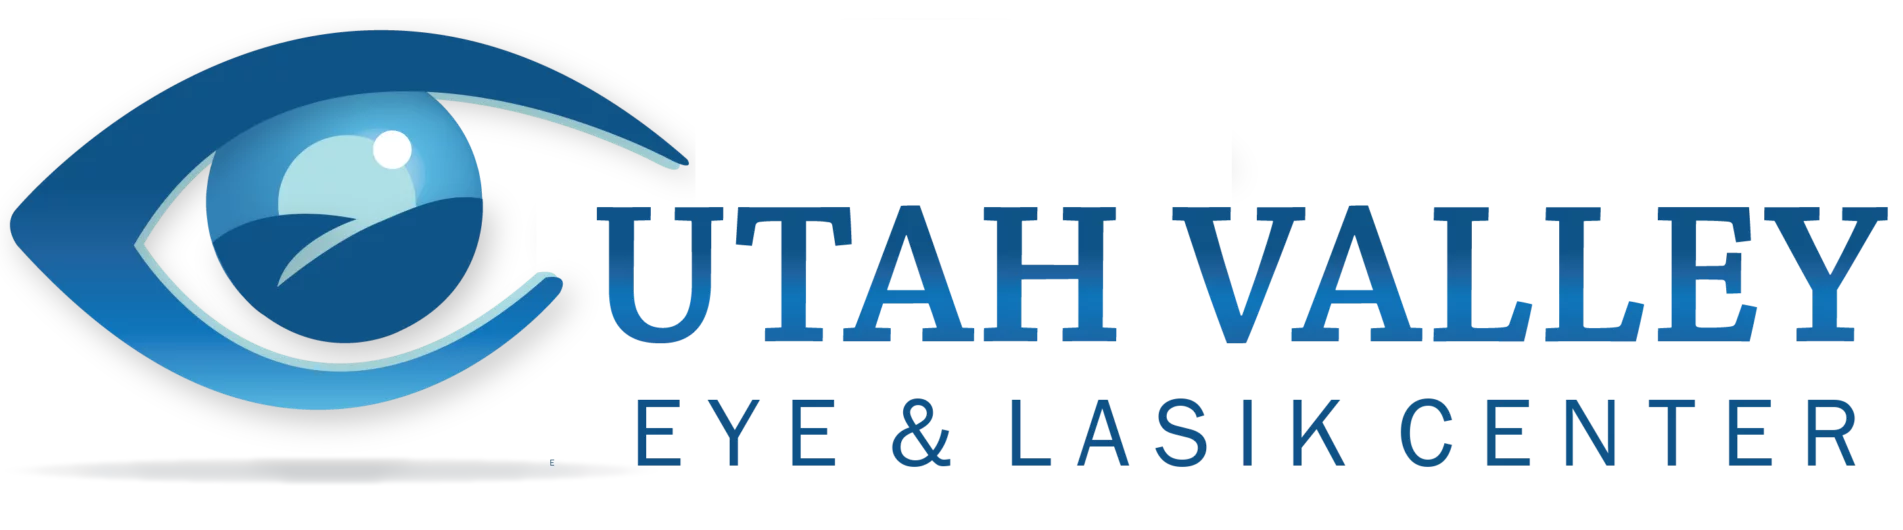 Utah Valley Eye